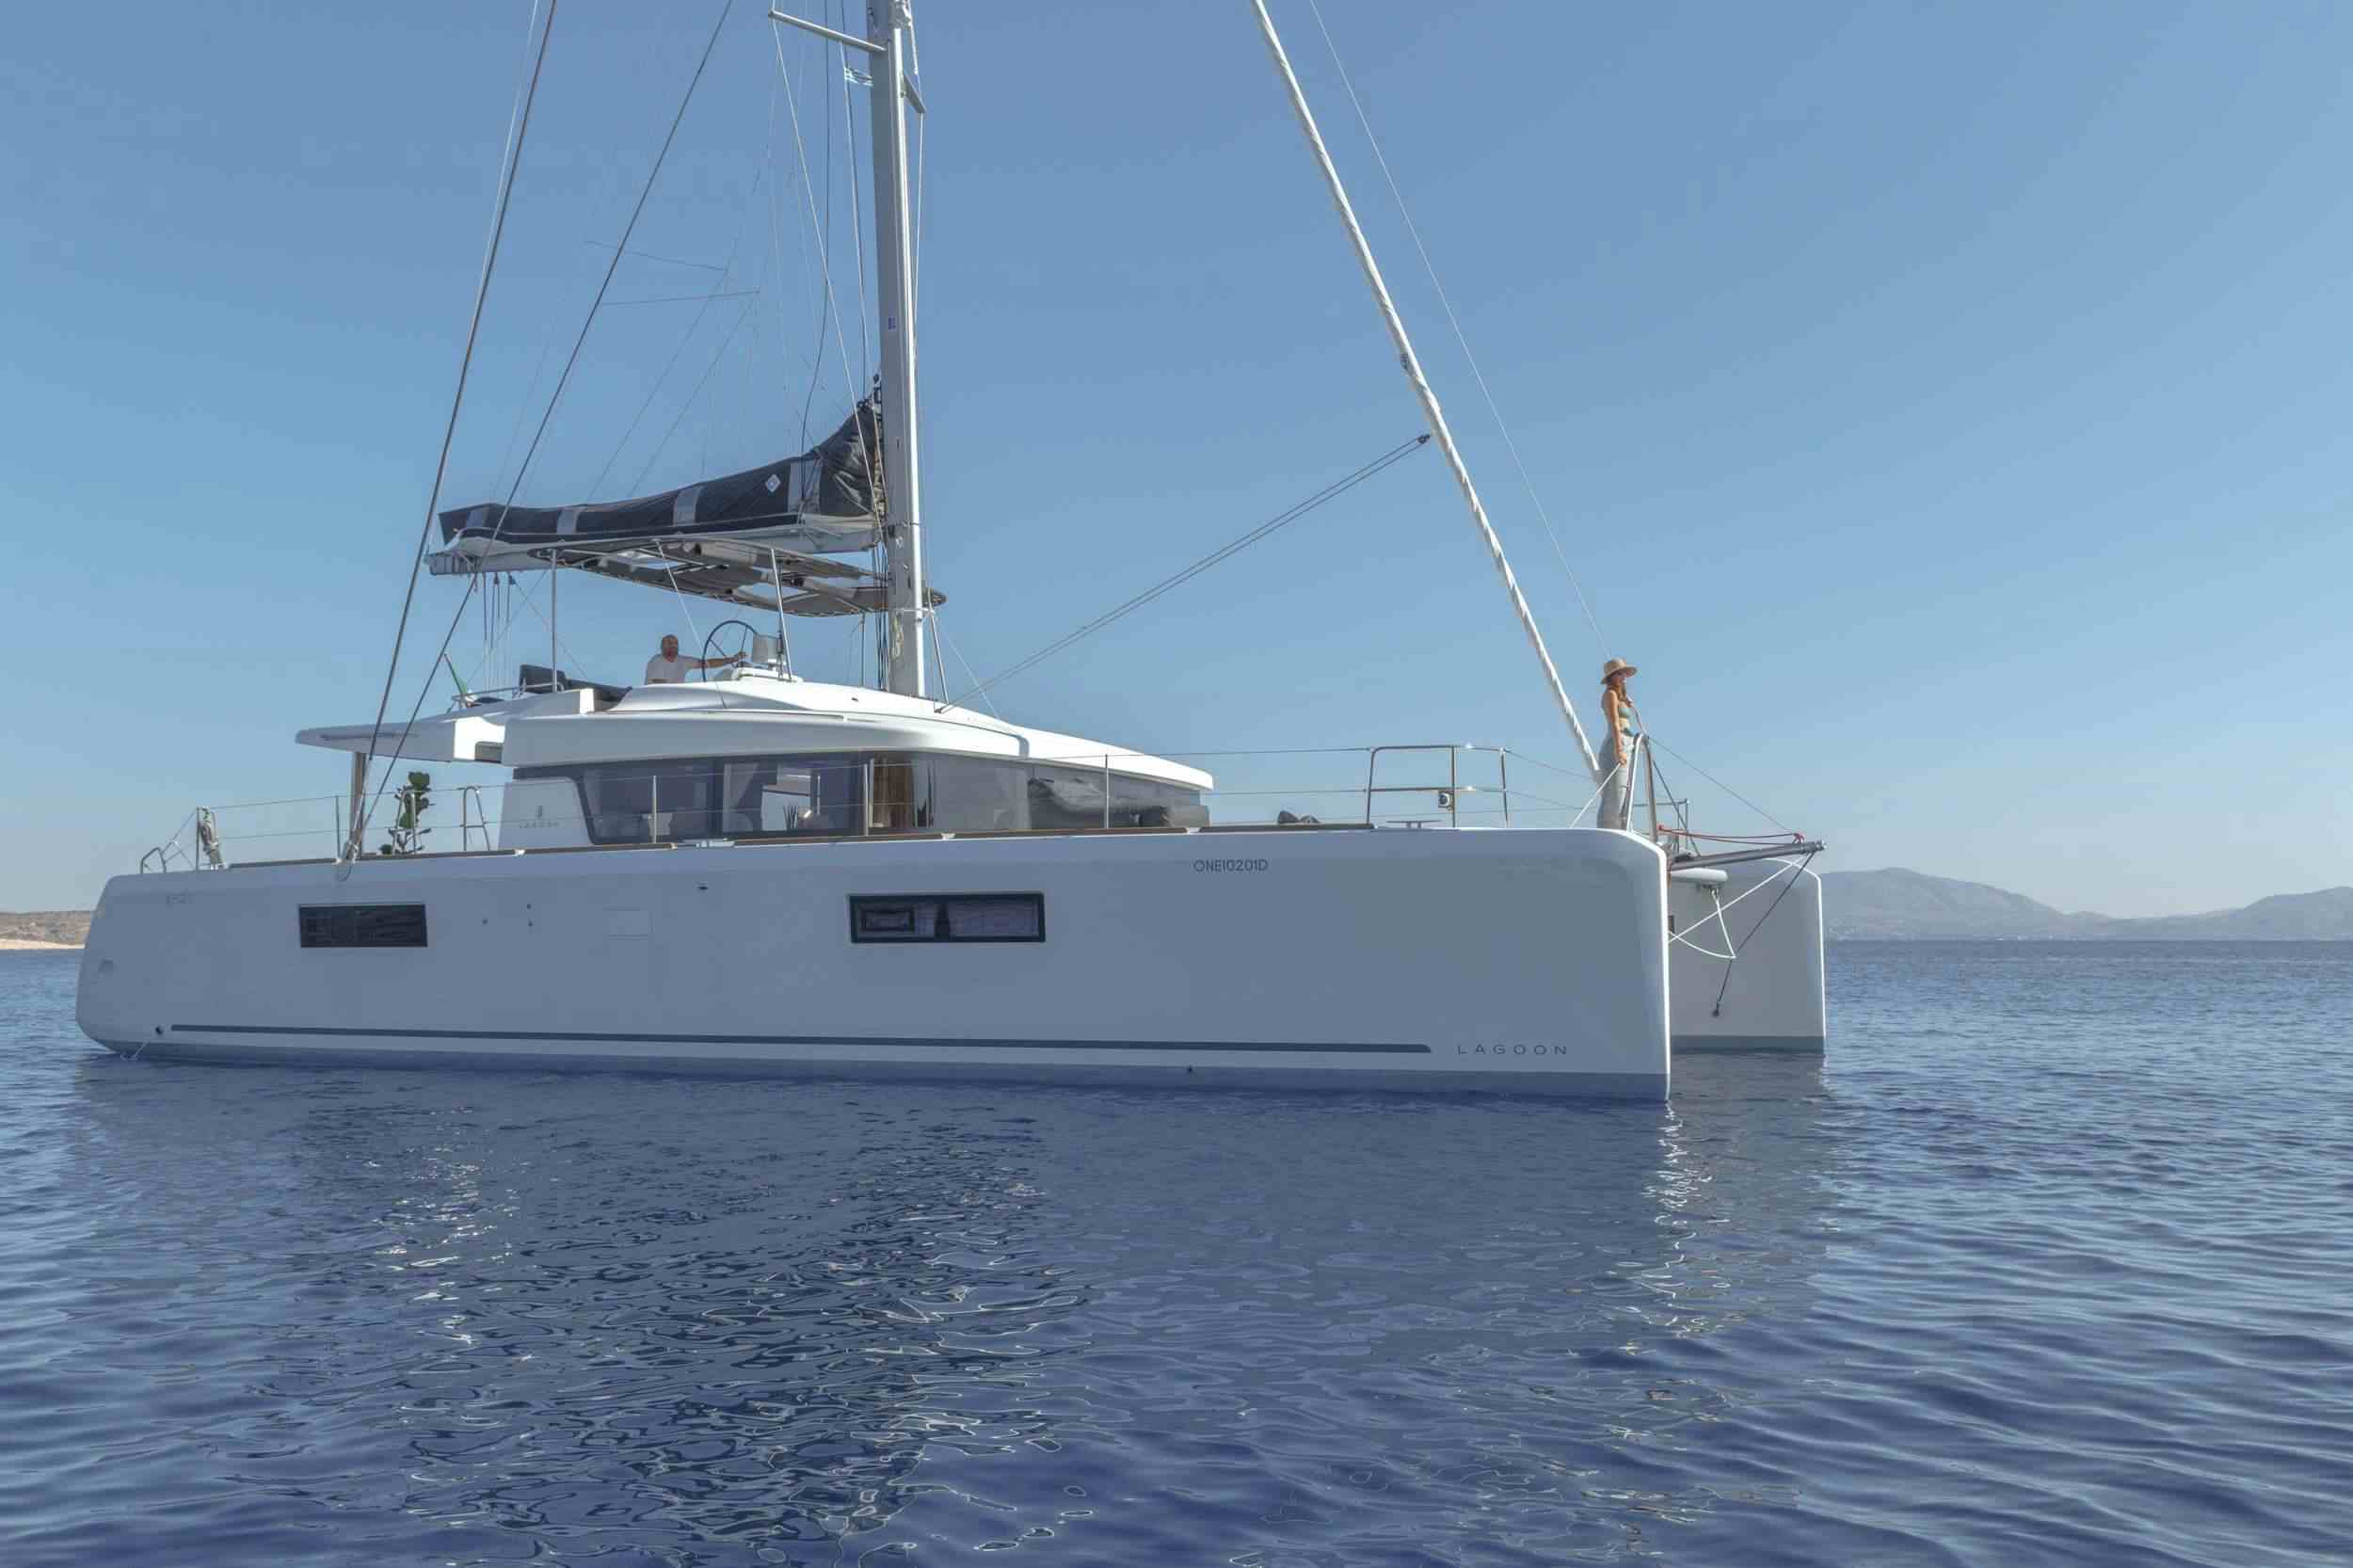 ONEIDA - Yacht Charter Birmingham & Boat hire in Greece 1